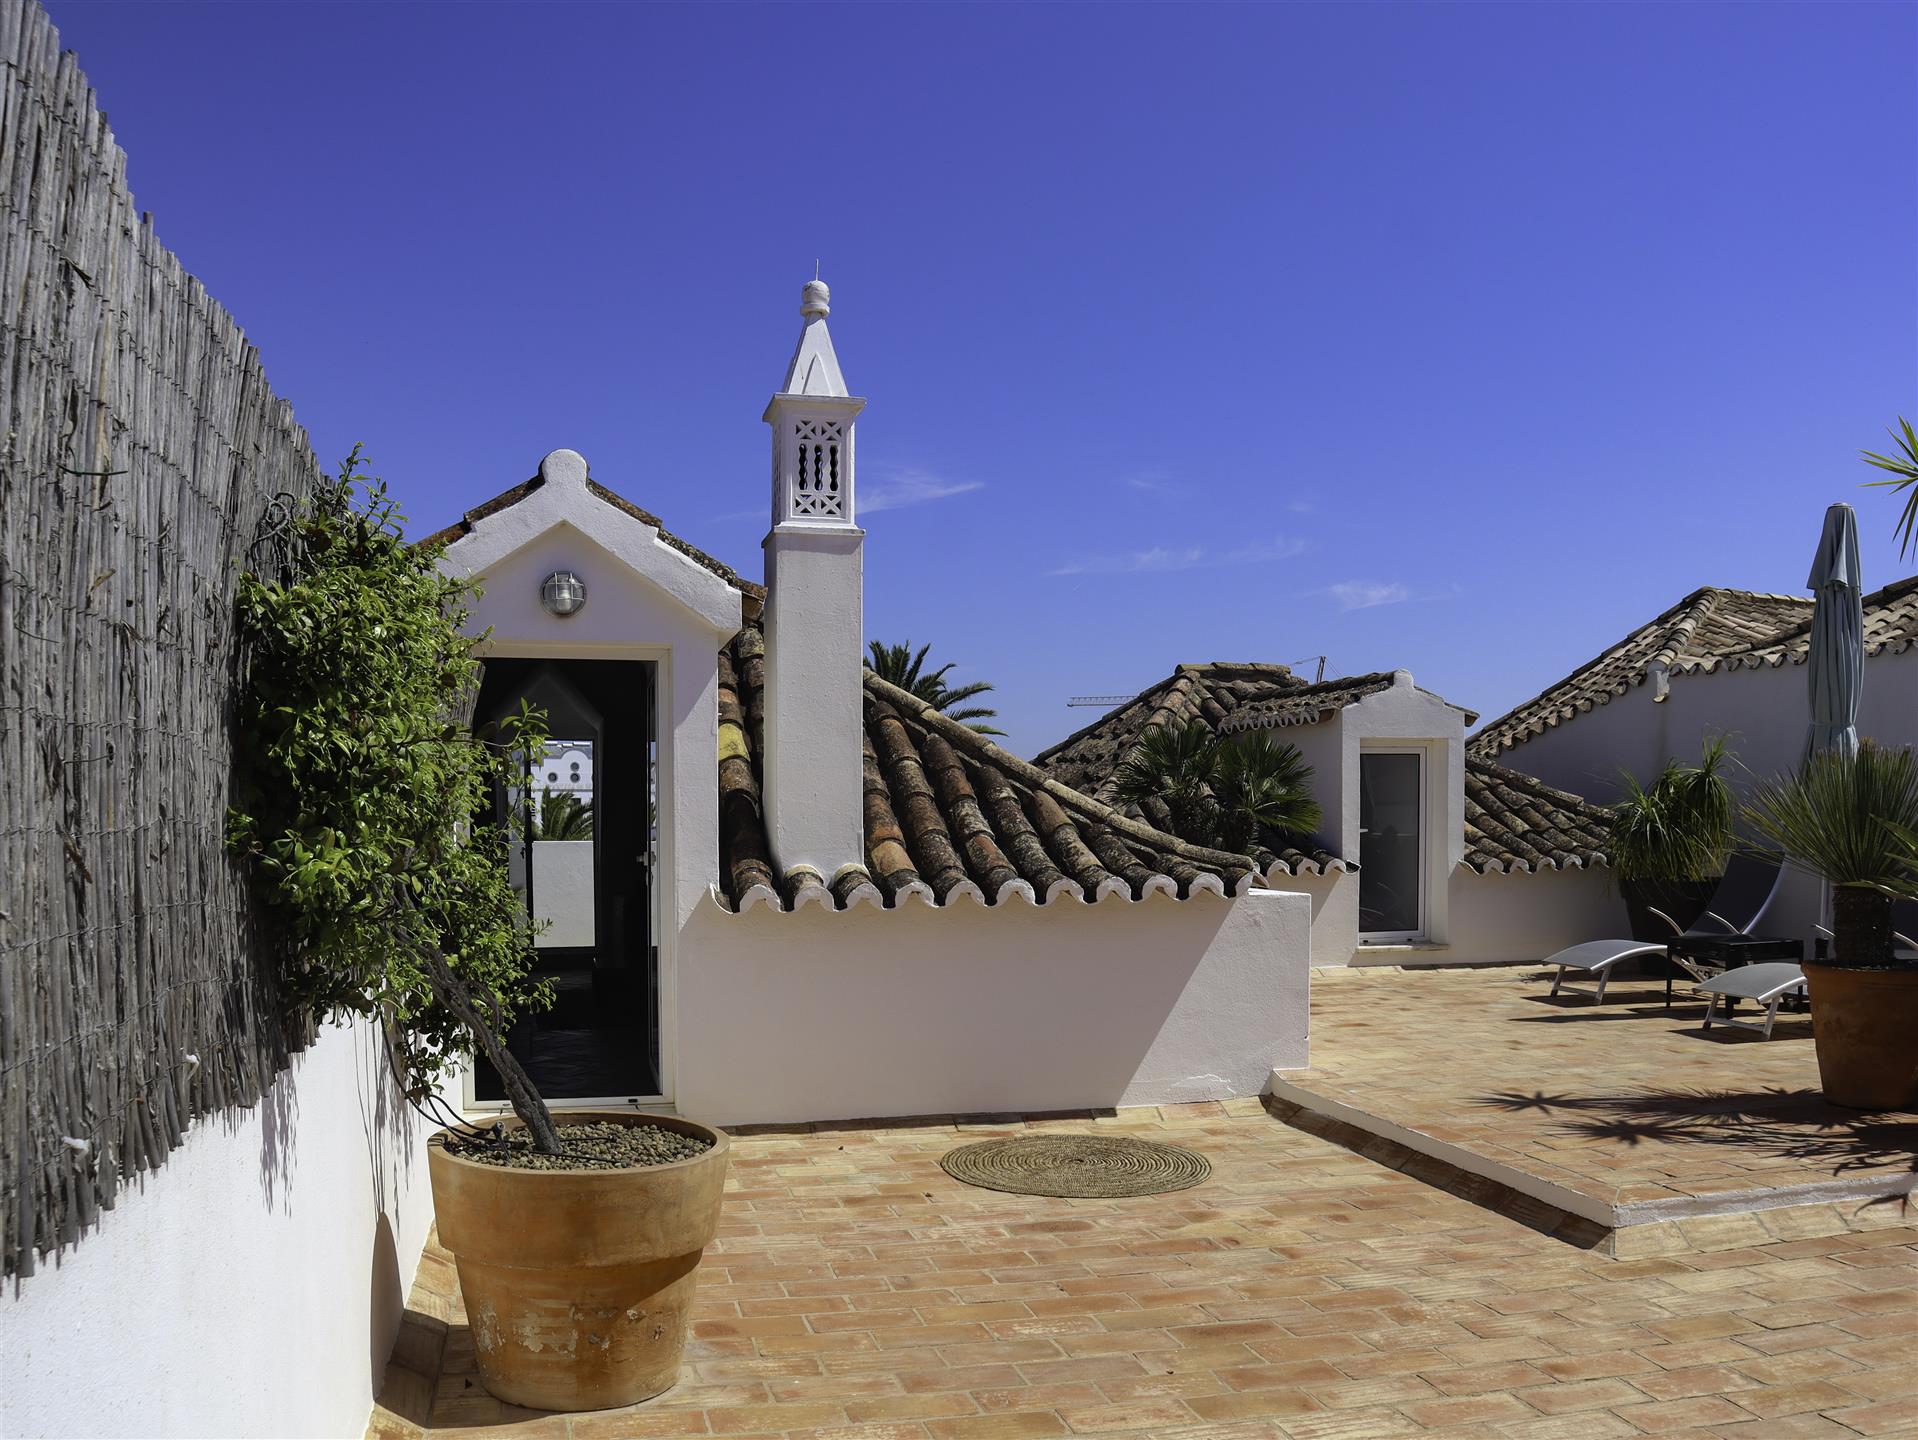 Apartment mit 4 Schlafzimmern - Historisches Viertel - Innenstadt von Tavira - Algarve